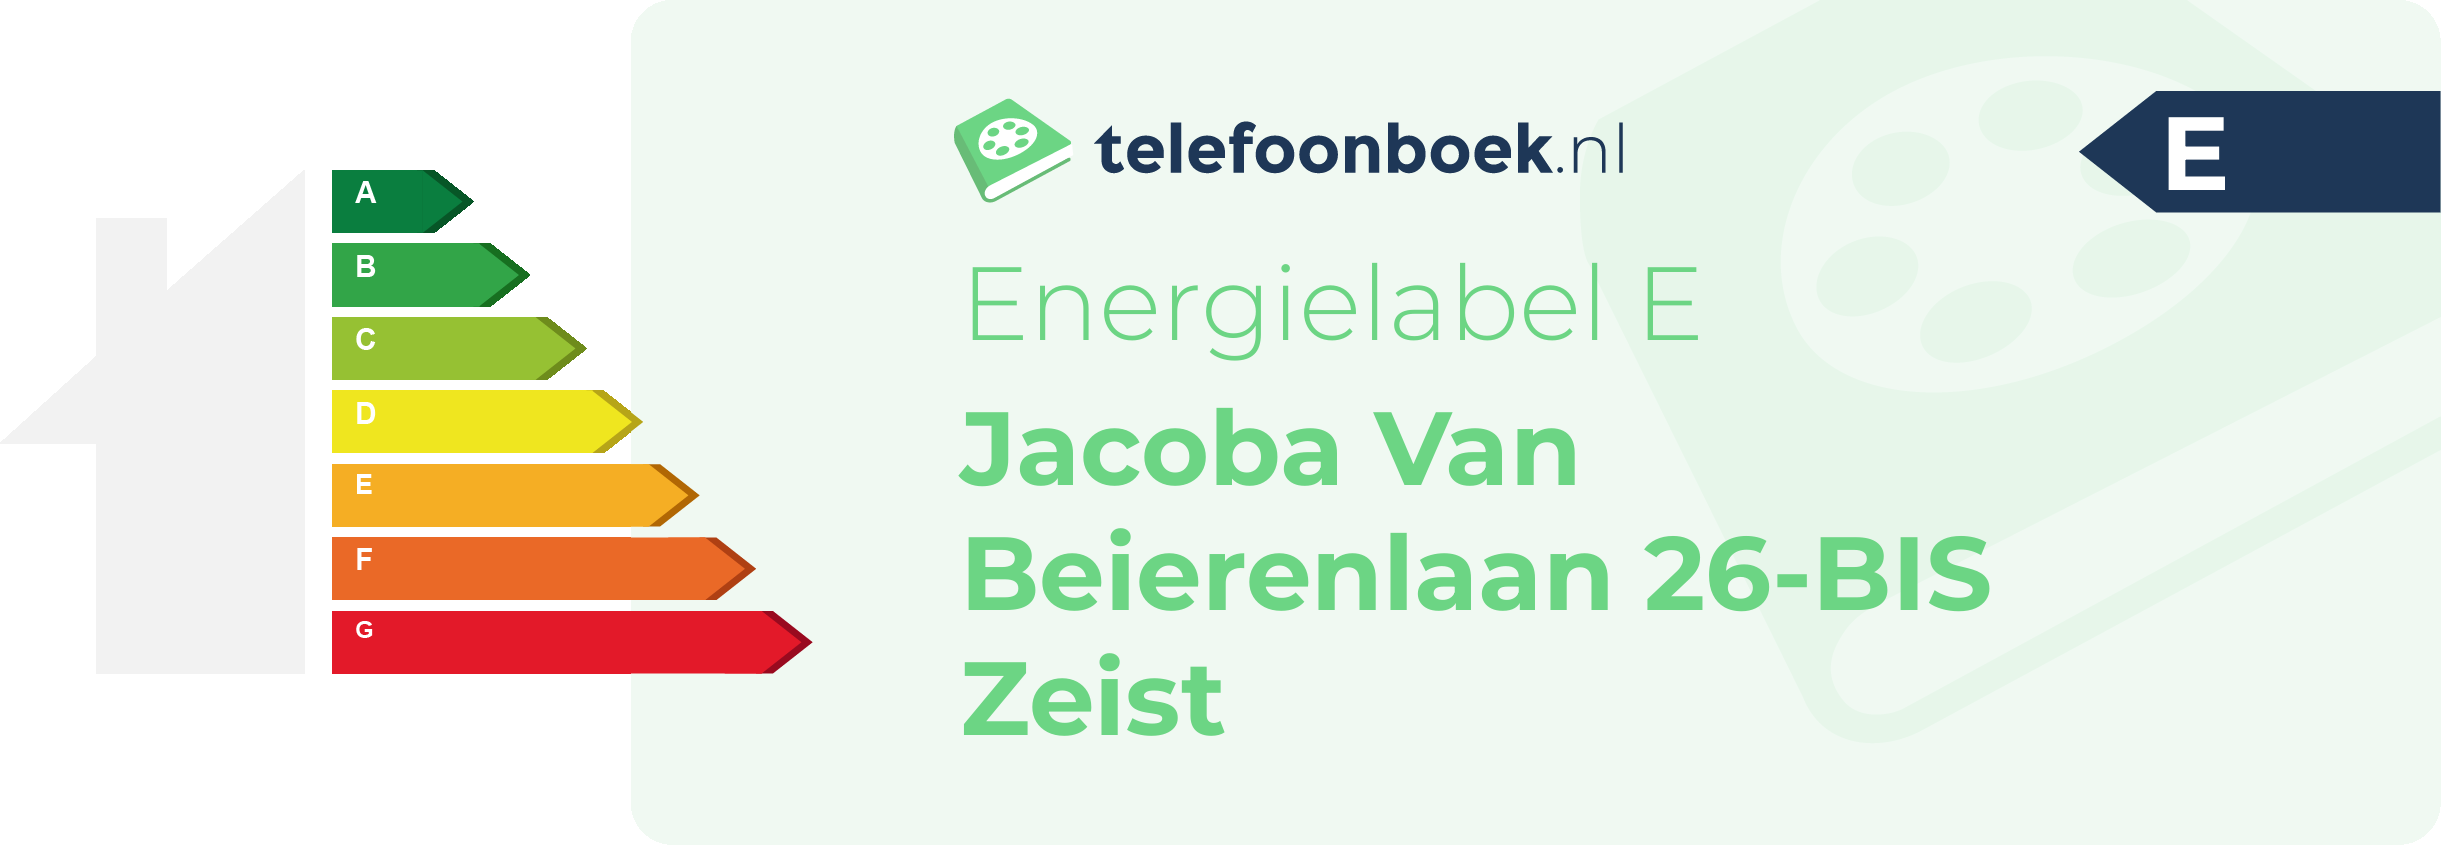 Energielabel Jacoba Van Beierenlaan 26-BIS Zeist